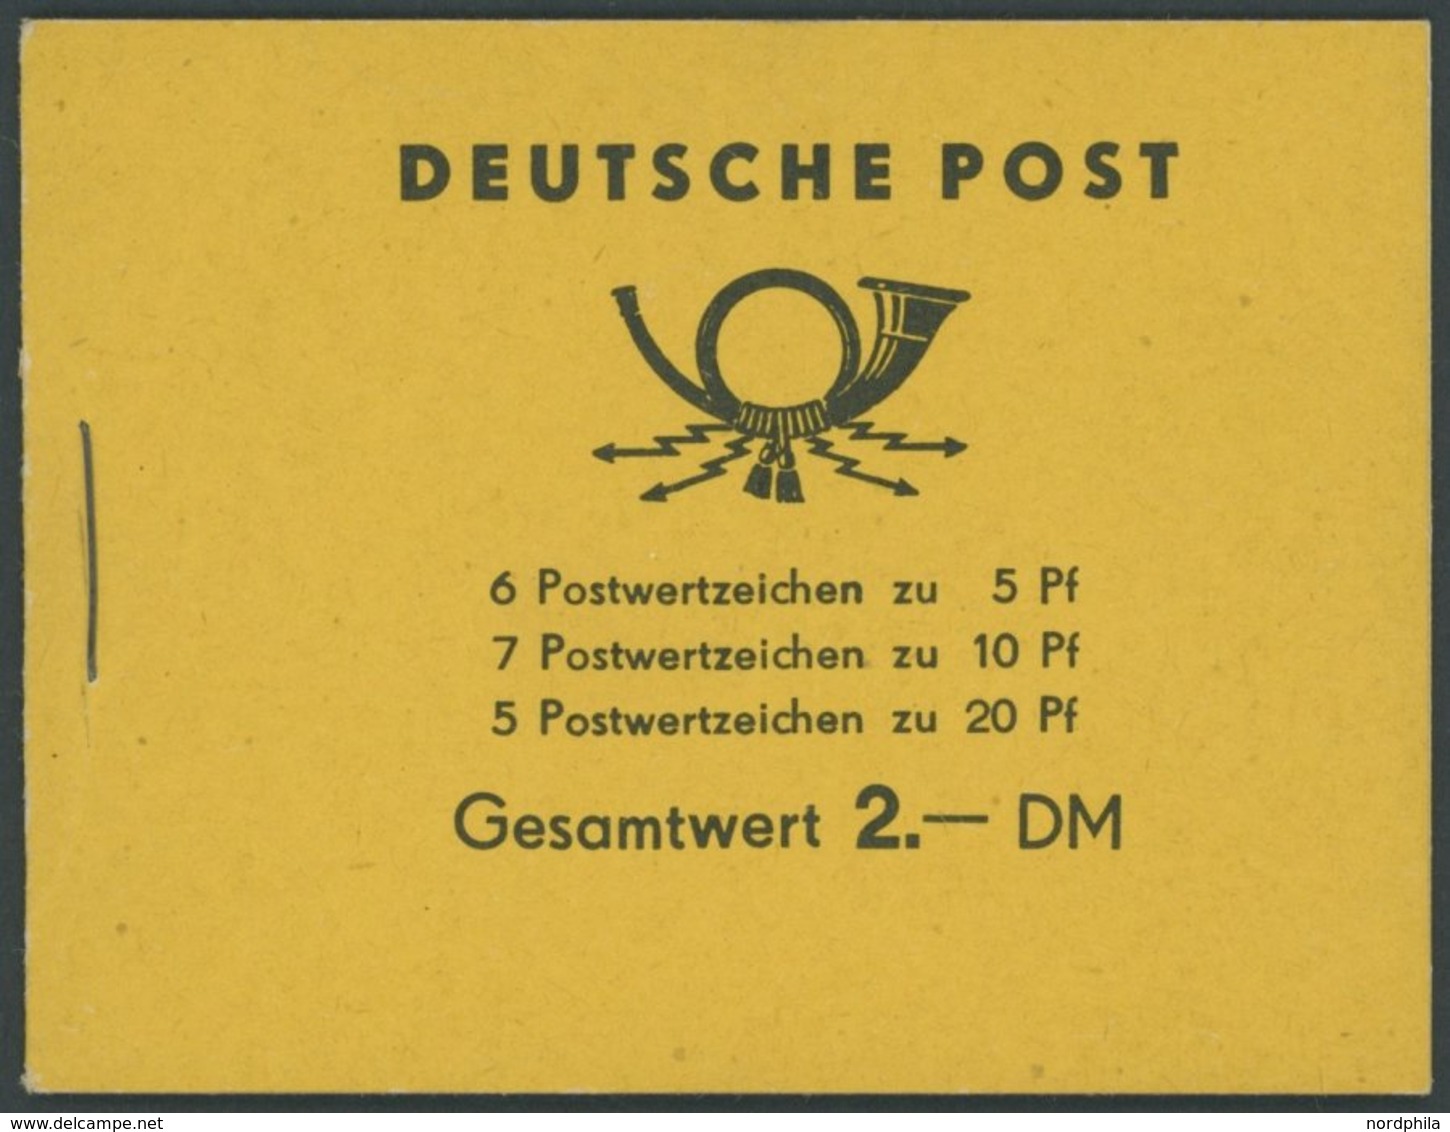 ZUSAMMENDRUCKE MH 2a1 **, 1957, Markenheftchen Fünfjahrplan, Postfrisch, Pracht, Mi. 170.- - Se-Tenant